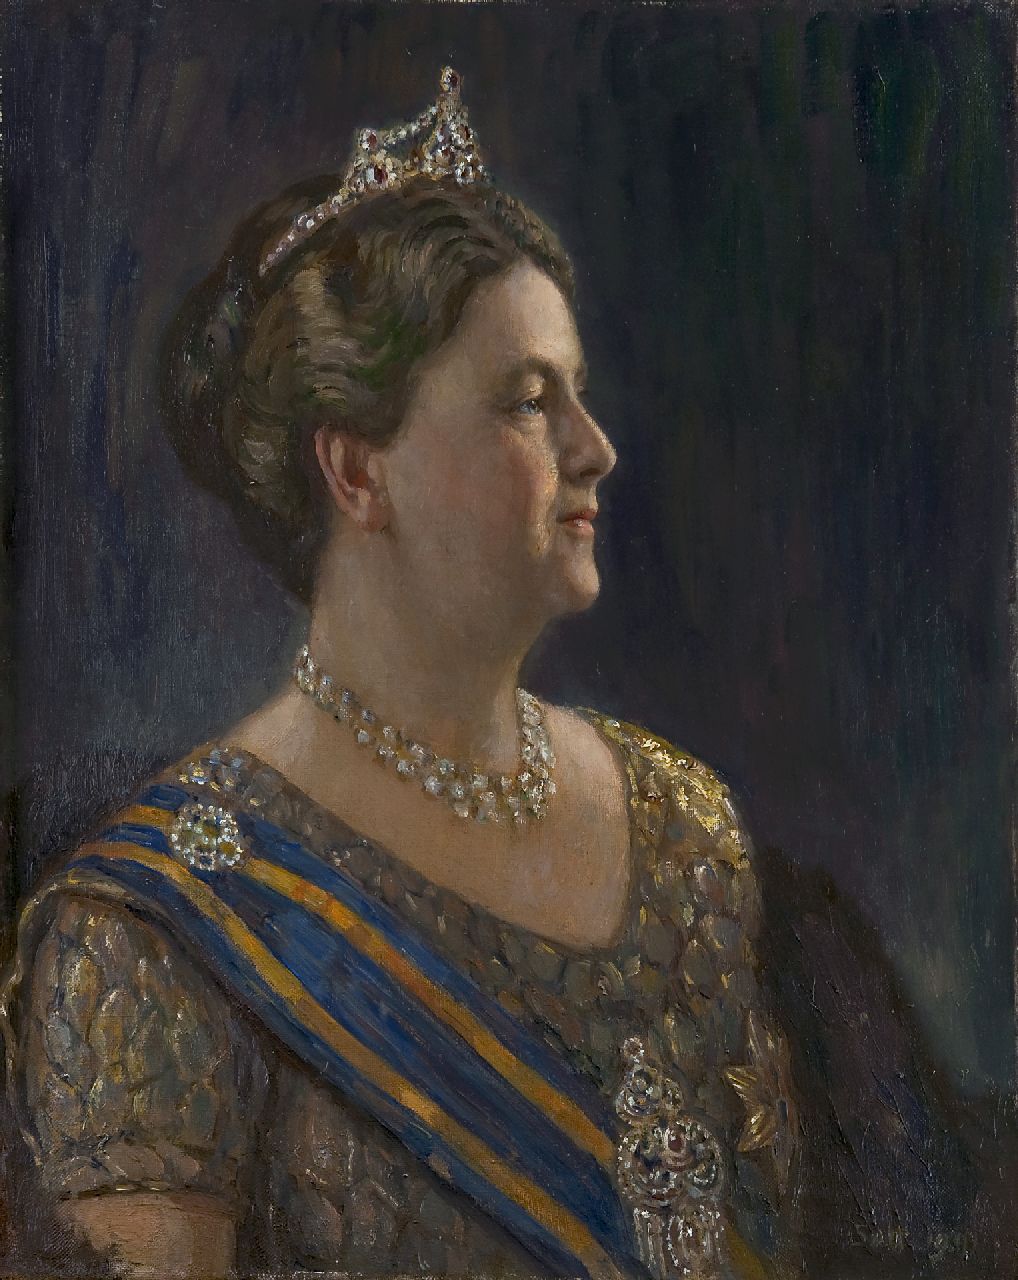 Heer S. de | Simon de Heer, Queen Wilhelmina, oil on canvas 68.3 x 54.5 cm, signed l.r. with initials SdH and dated 1941